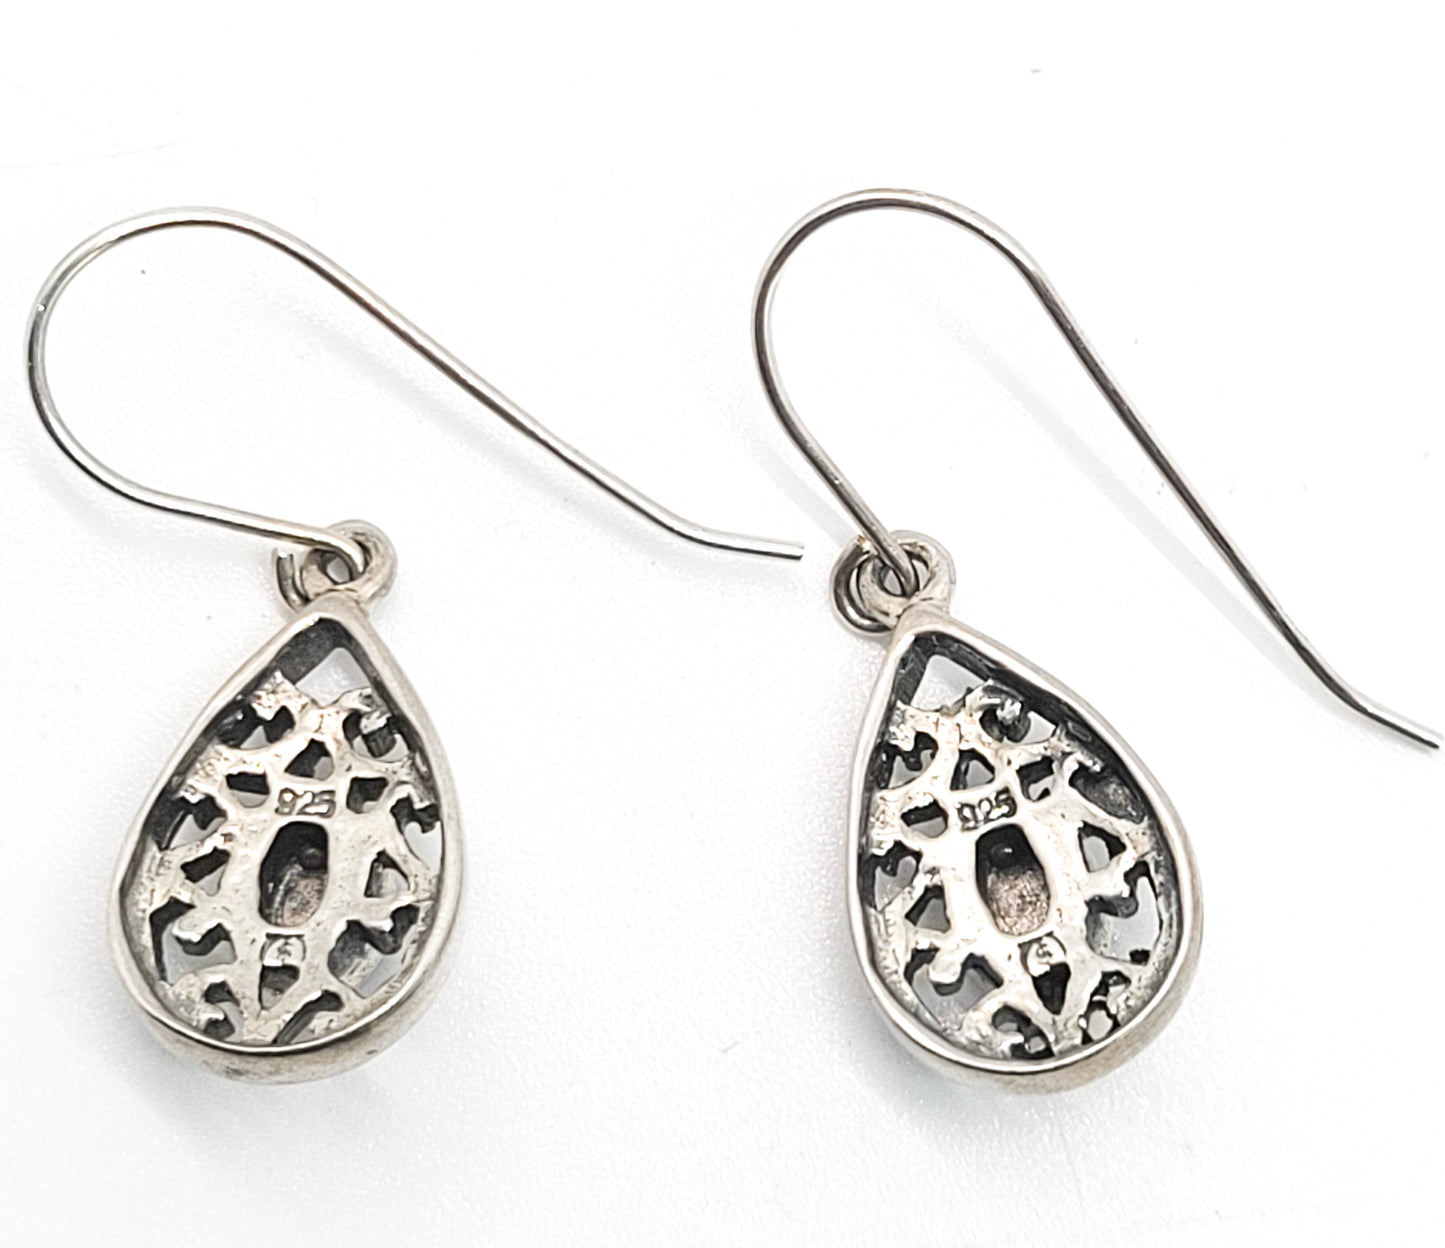 Blue glass mosaic tribal Balinese style open work drop sterling silver earrings